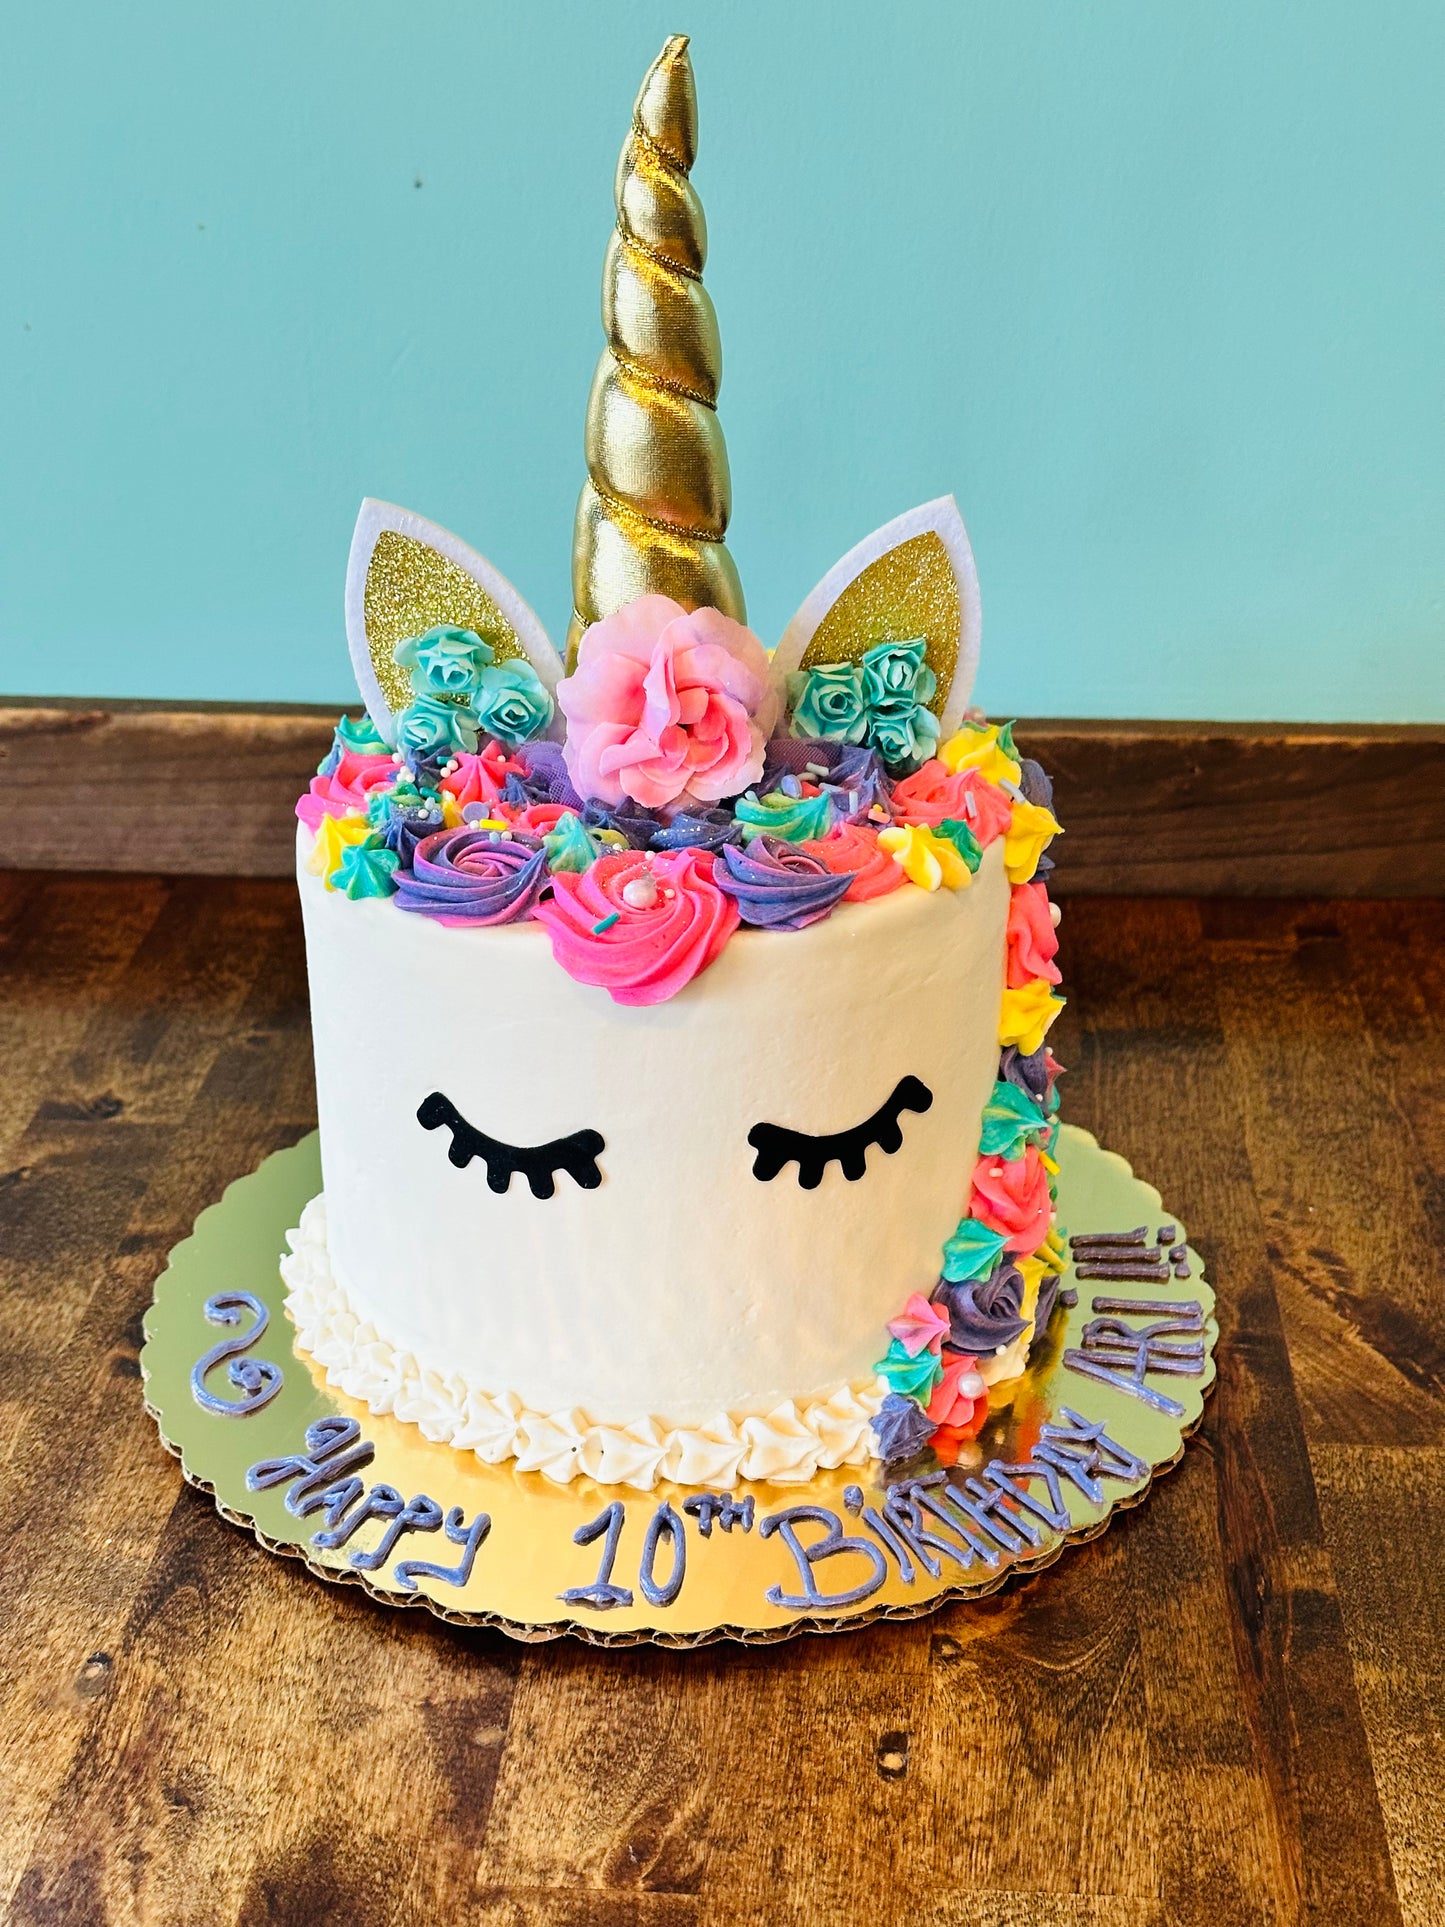 The Unicorn Cake